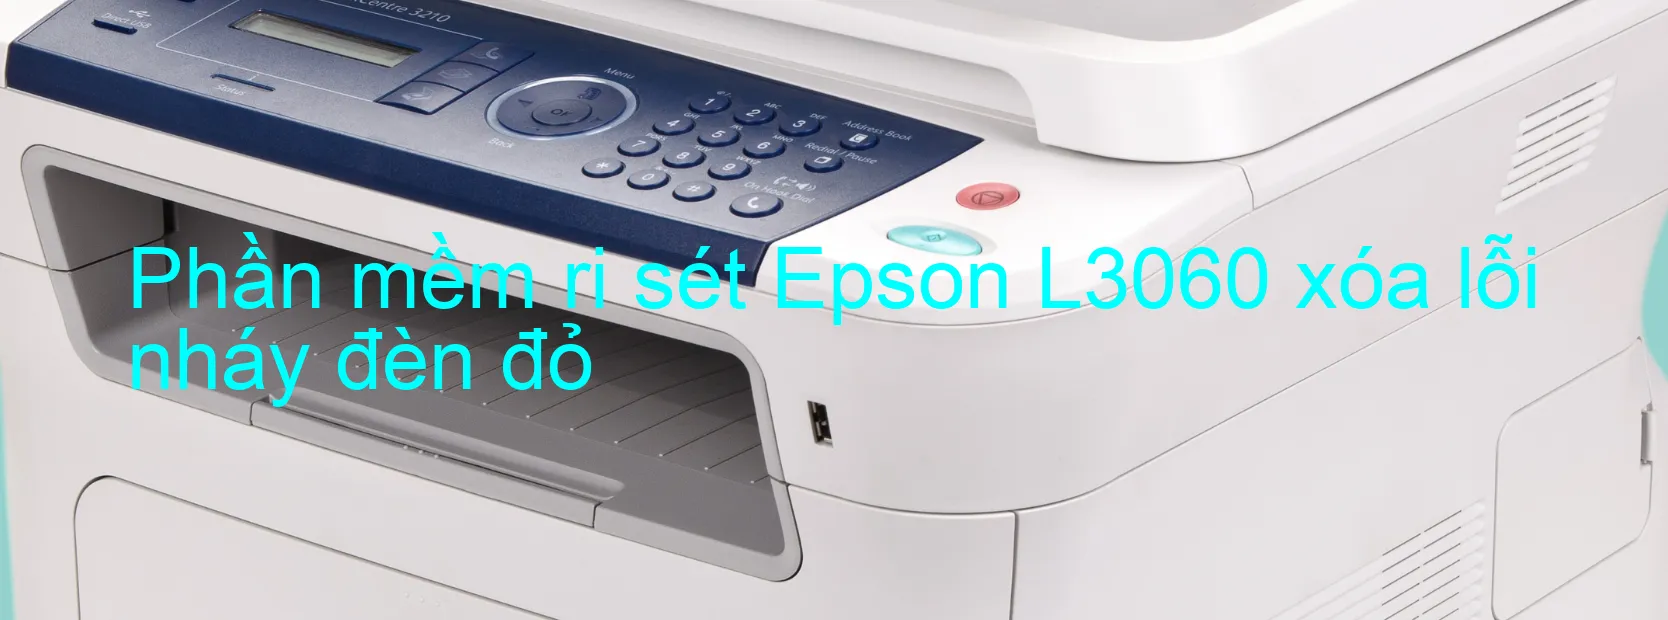 Phần mềm reset Epson L3060 xóa lỗi nháy đèn đỏ